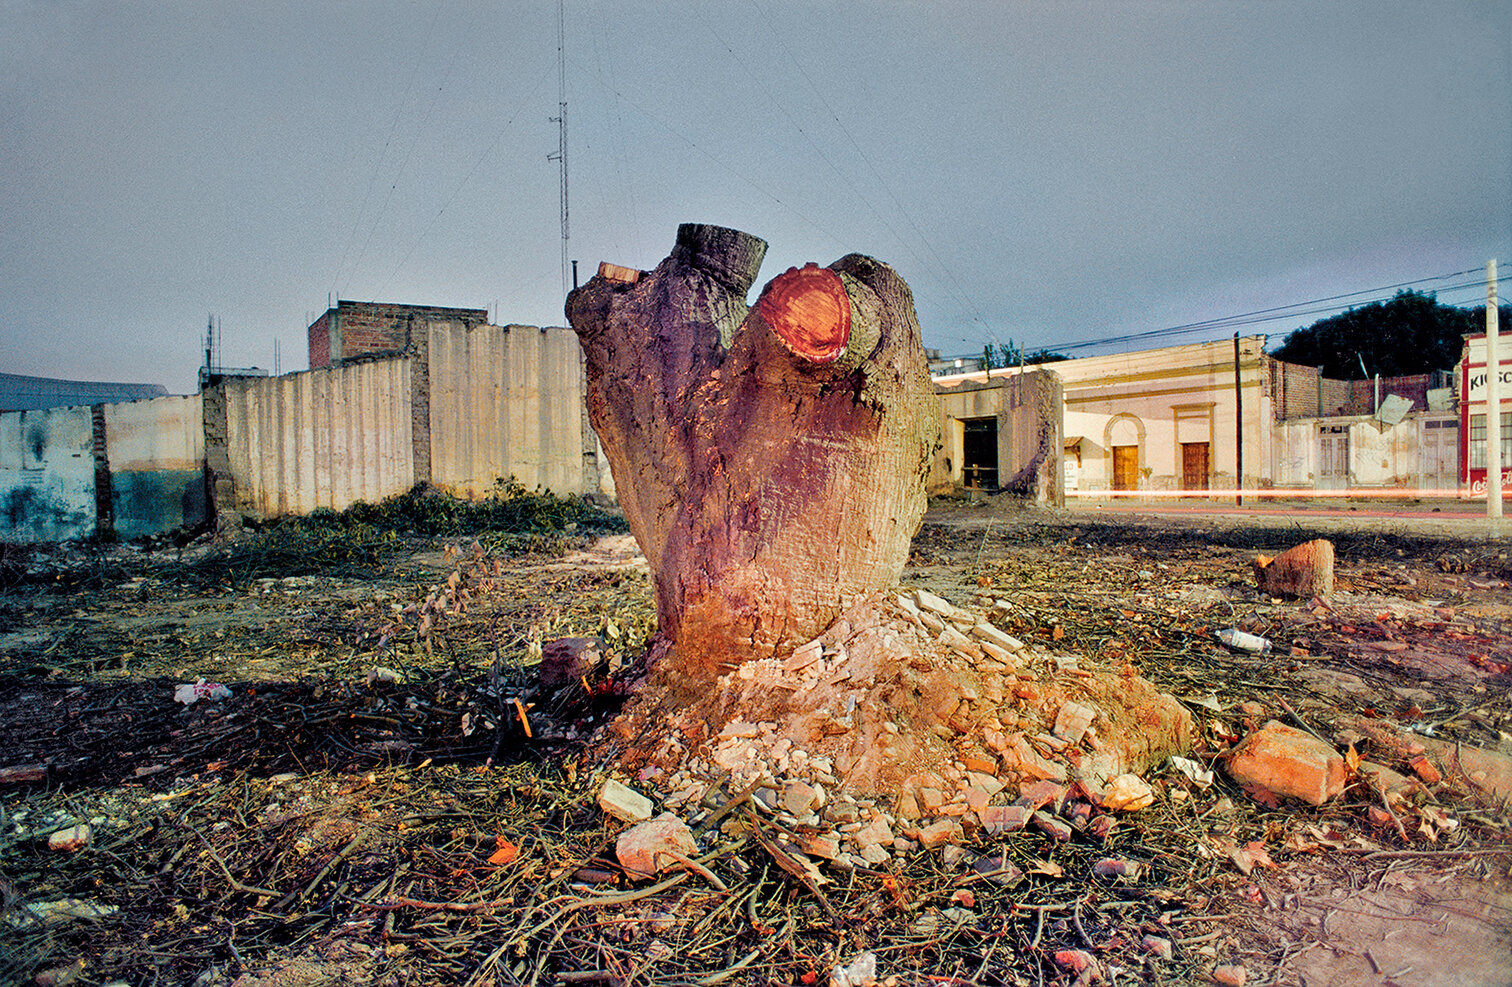 25 Arbol Cortado-A felled tree 2000 copia.jpg